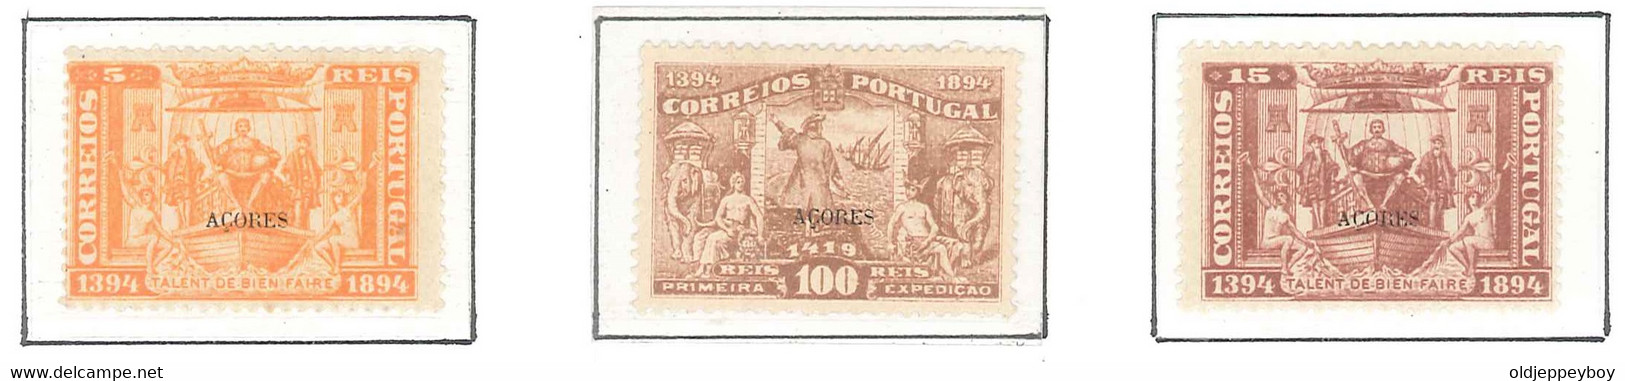 1894 Portugal  5º Centenário Nascimento Infante D. Henrique MH/MLH/MNH ORIGINAL GUM 5, 15, 100 Rs AZORES AÇORES  OVPT - Explorers